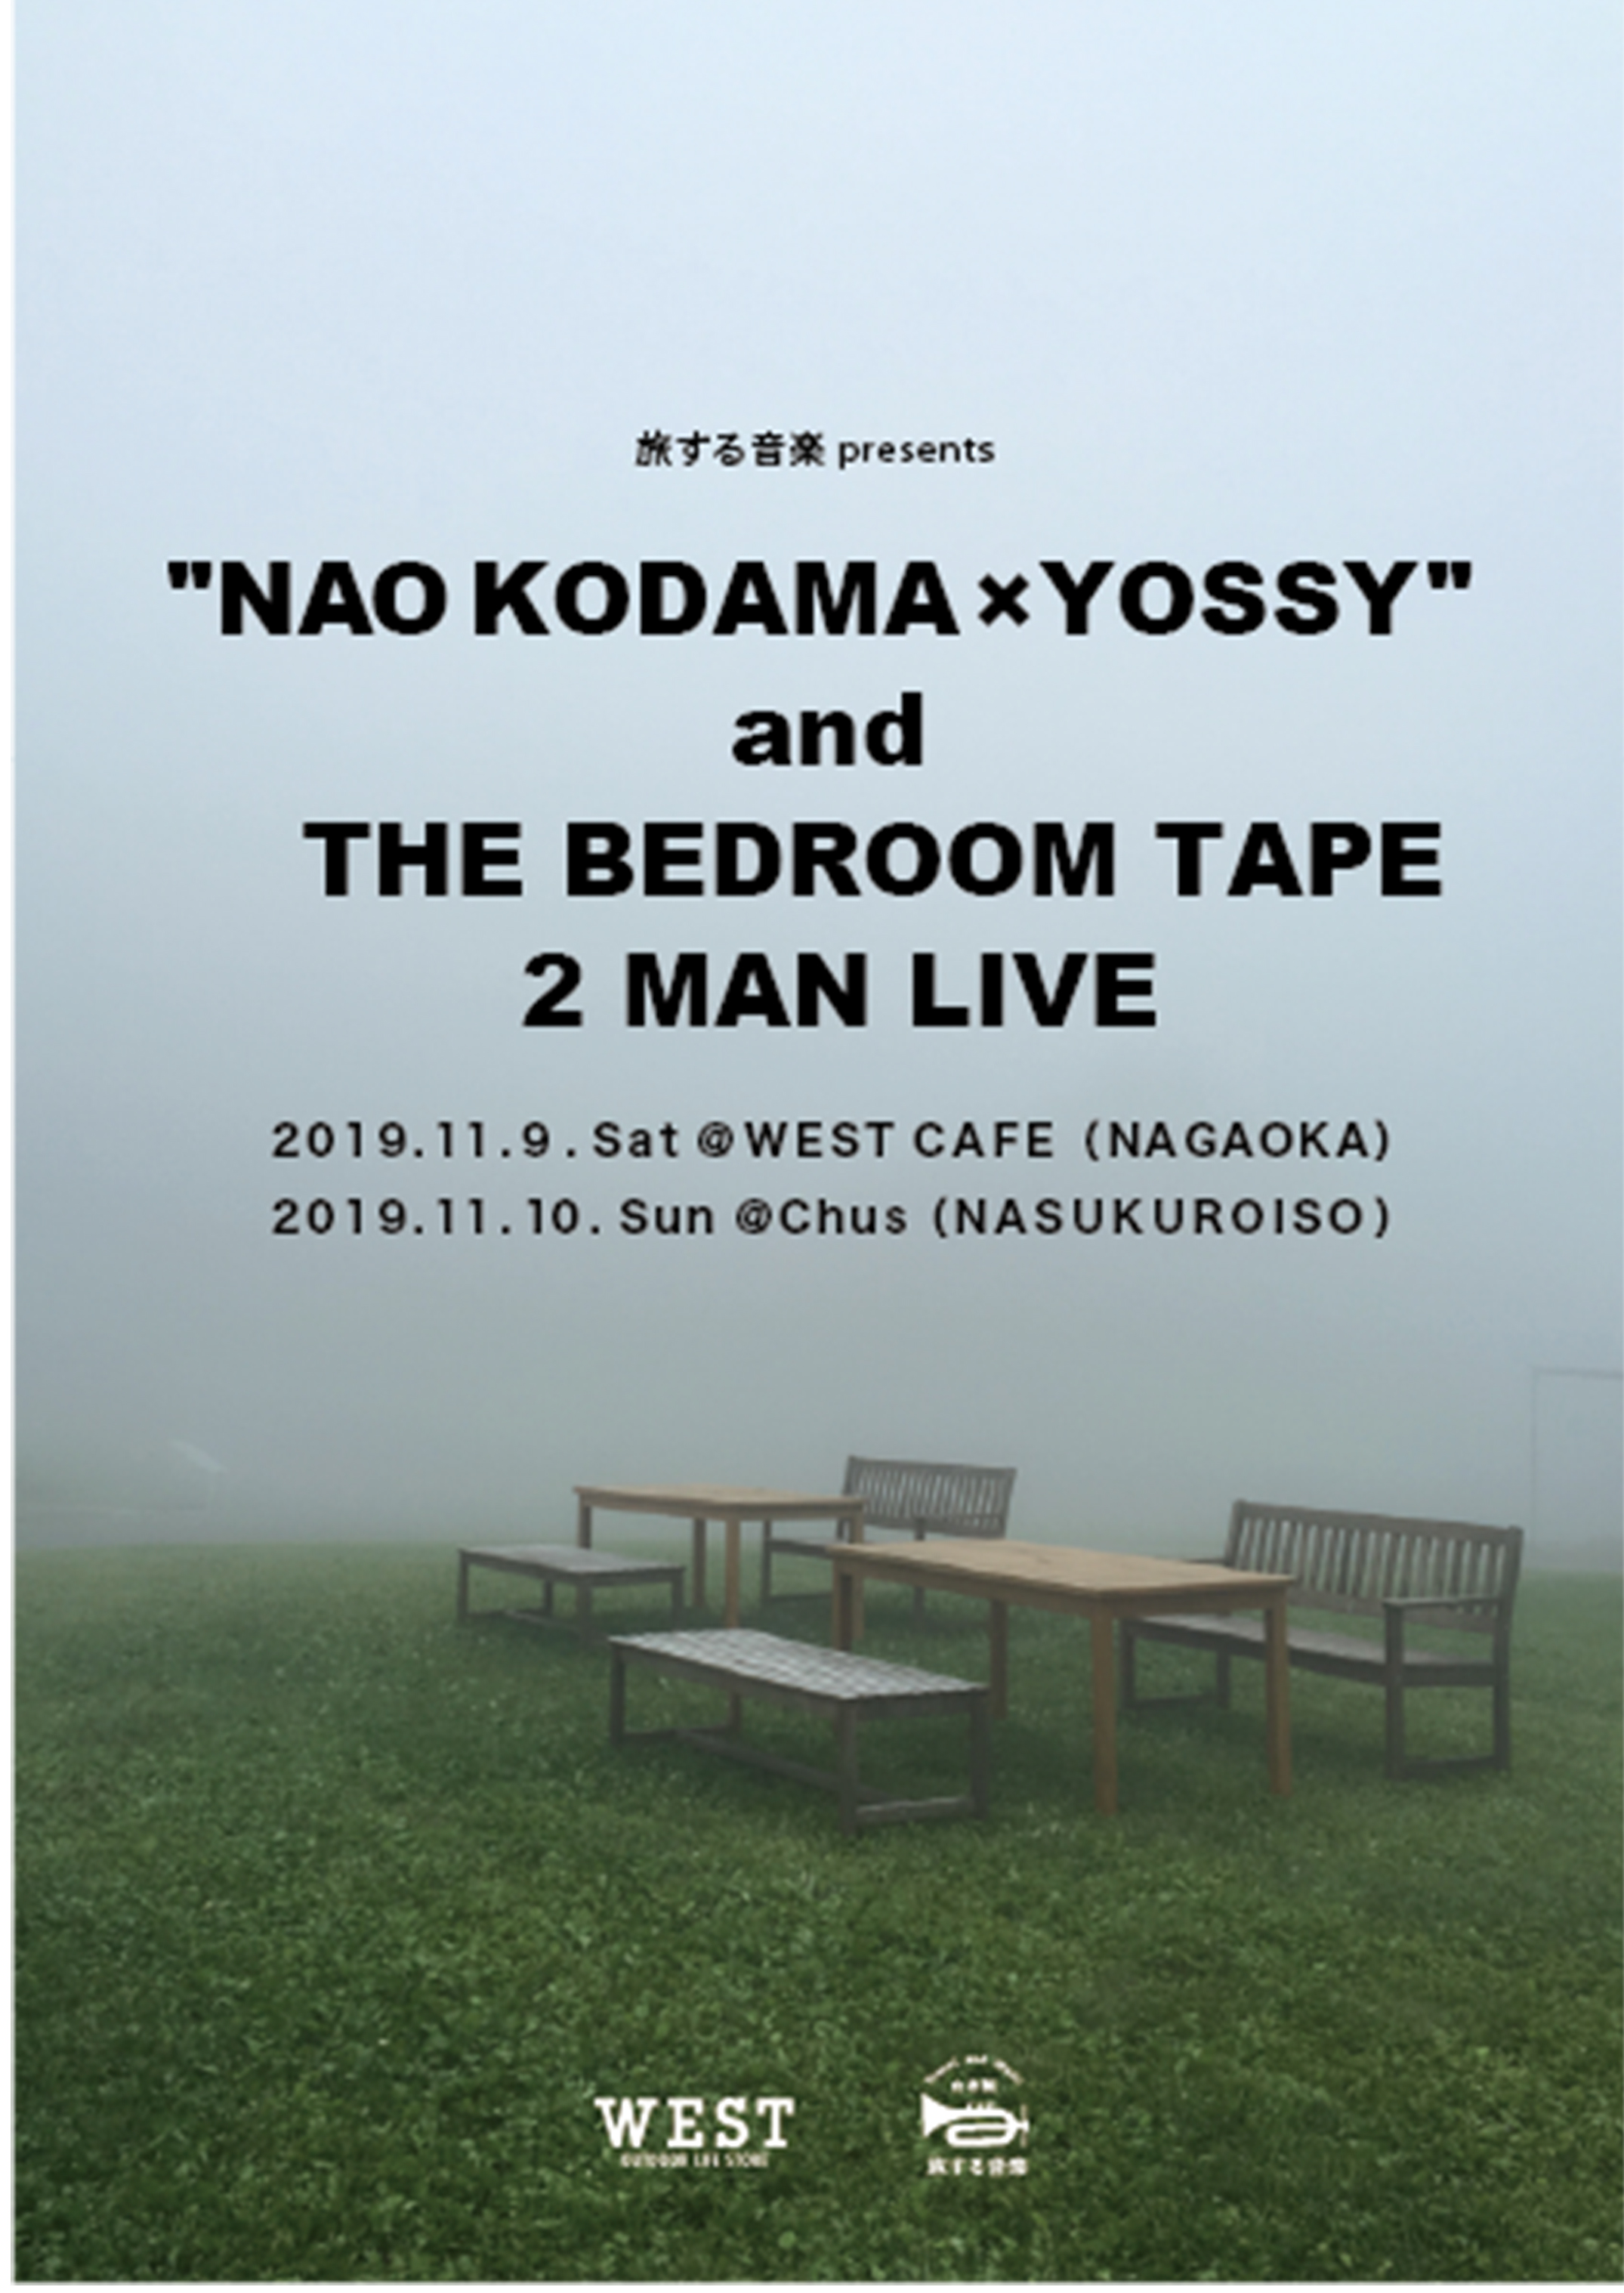 11/9 旅する音楽presents「児玉奈央×YOSSY」 & 「THE BED ROOM TAPE」in NAGAOKA